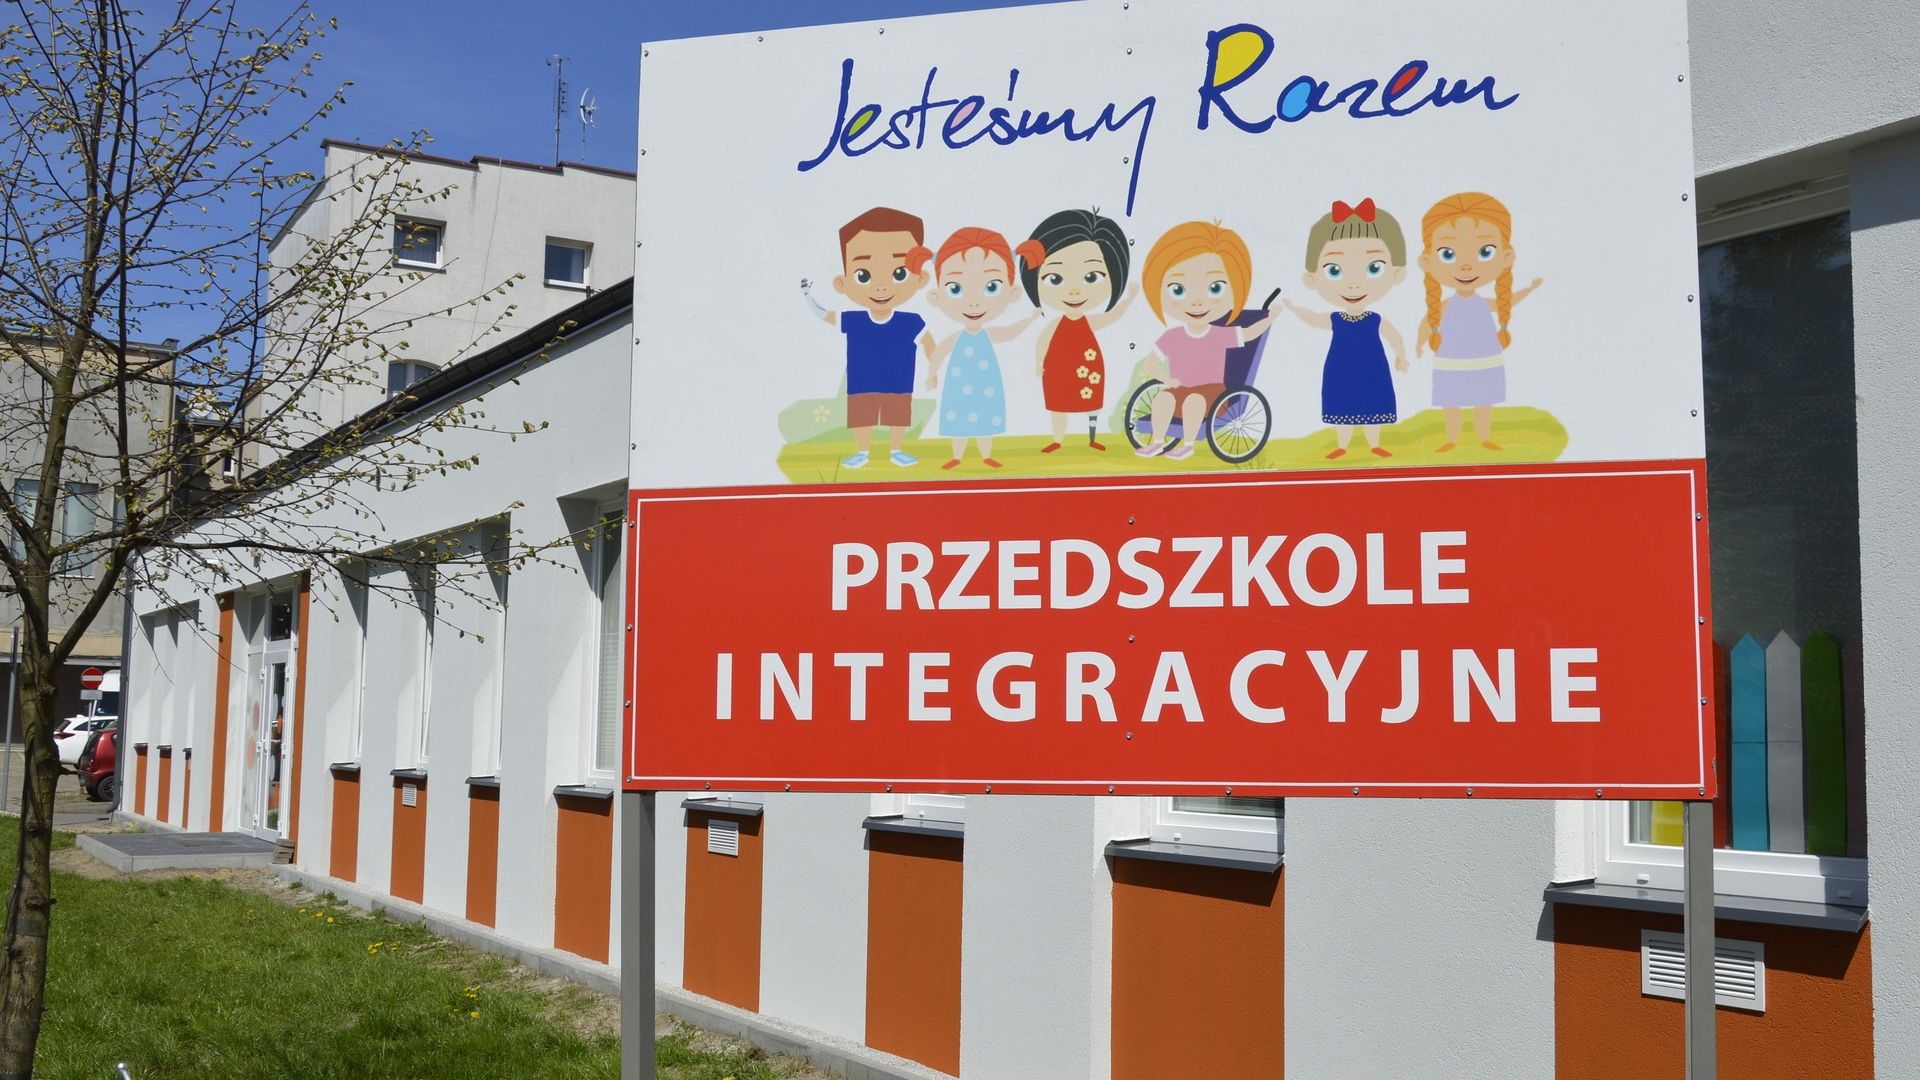 Przedszkole Integracyjne "Jesteśmy razem" w Lęborku